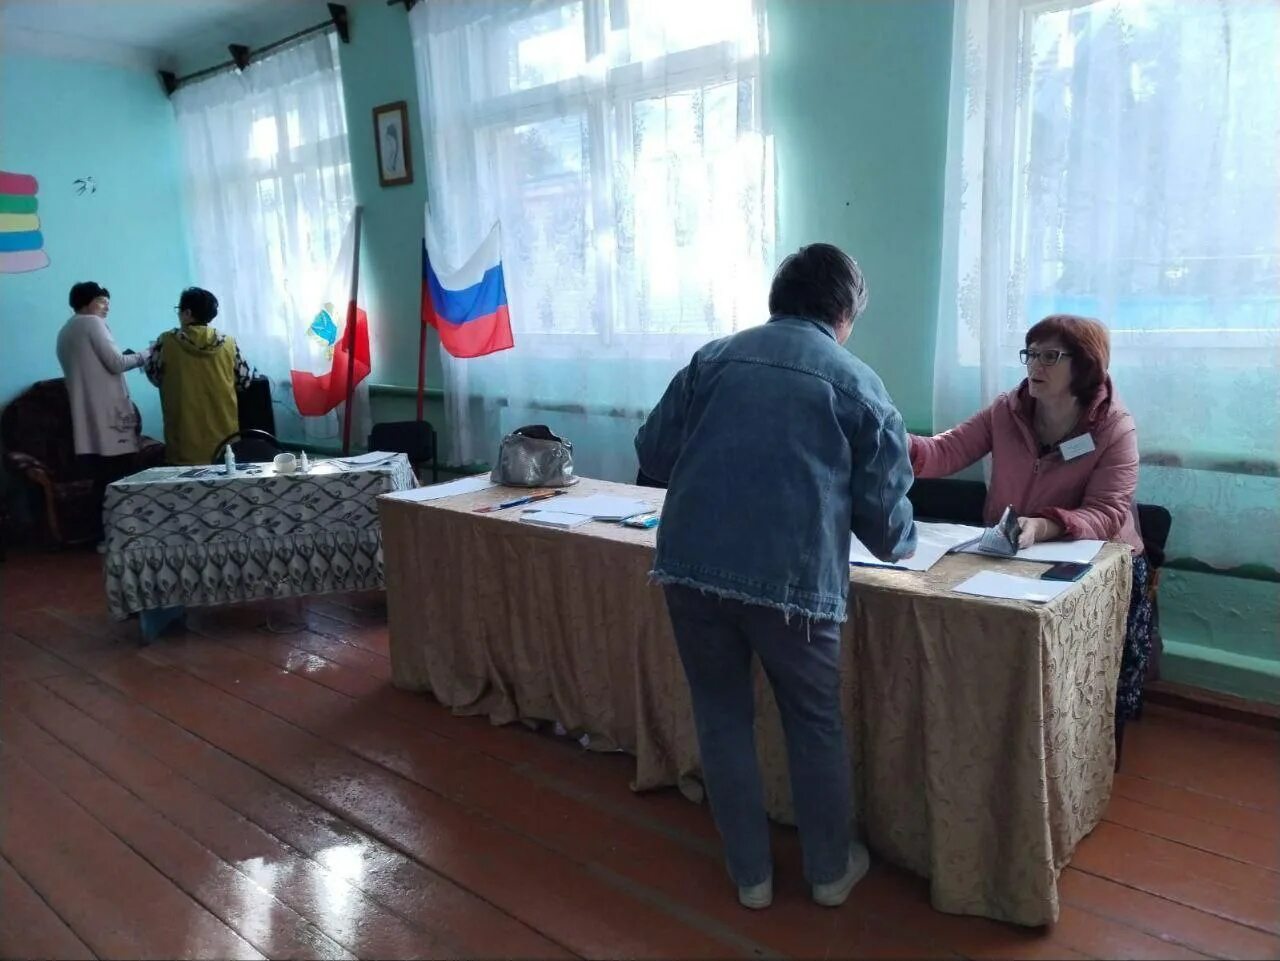 Нарушения на участках голосования. На избирательном участке присутствуют. Фото от наблюдателей из деревни в день выборов президента РФ.